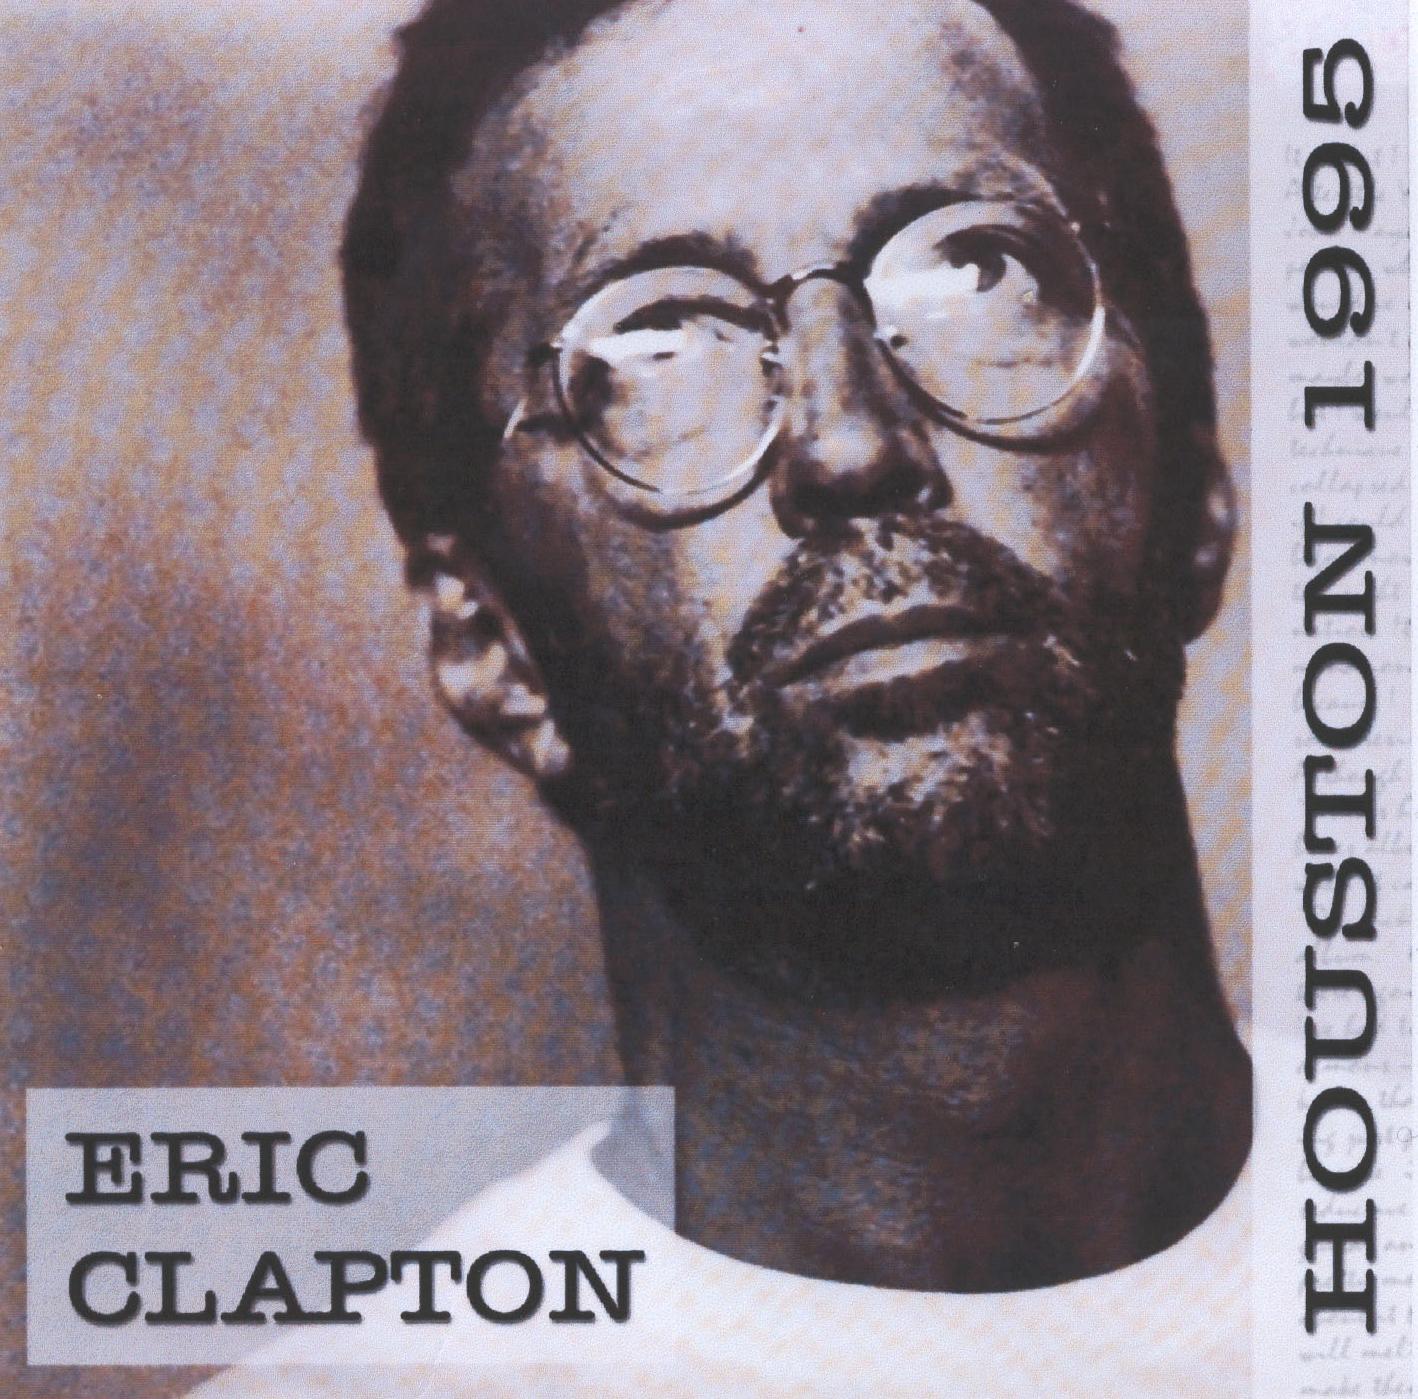 Eric Clapton - Houston 1995